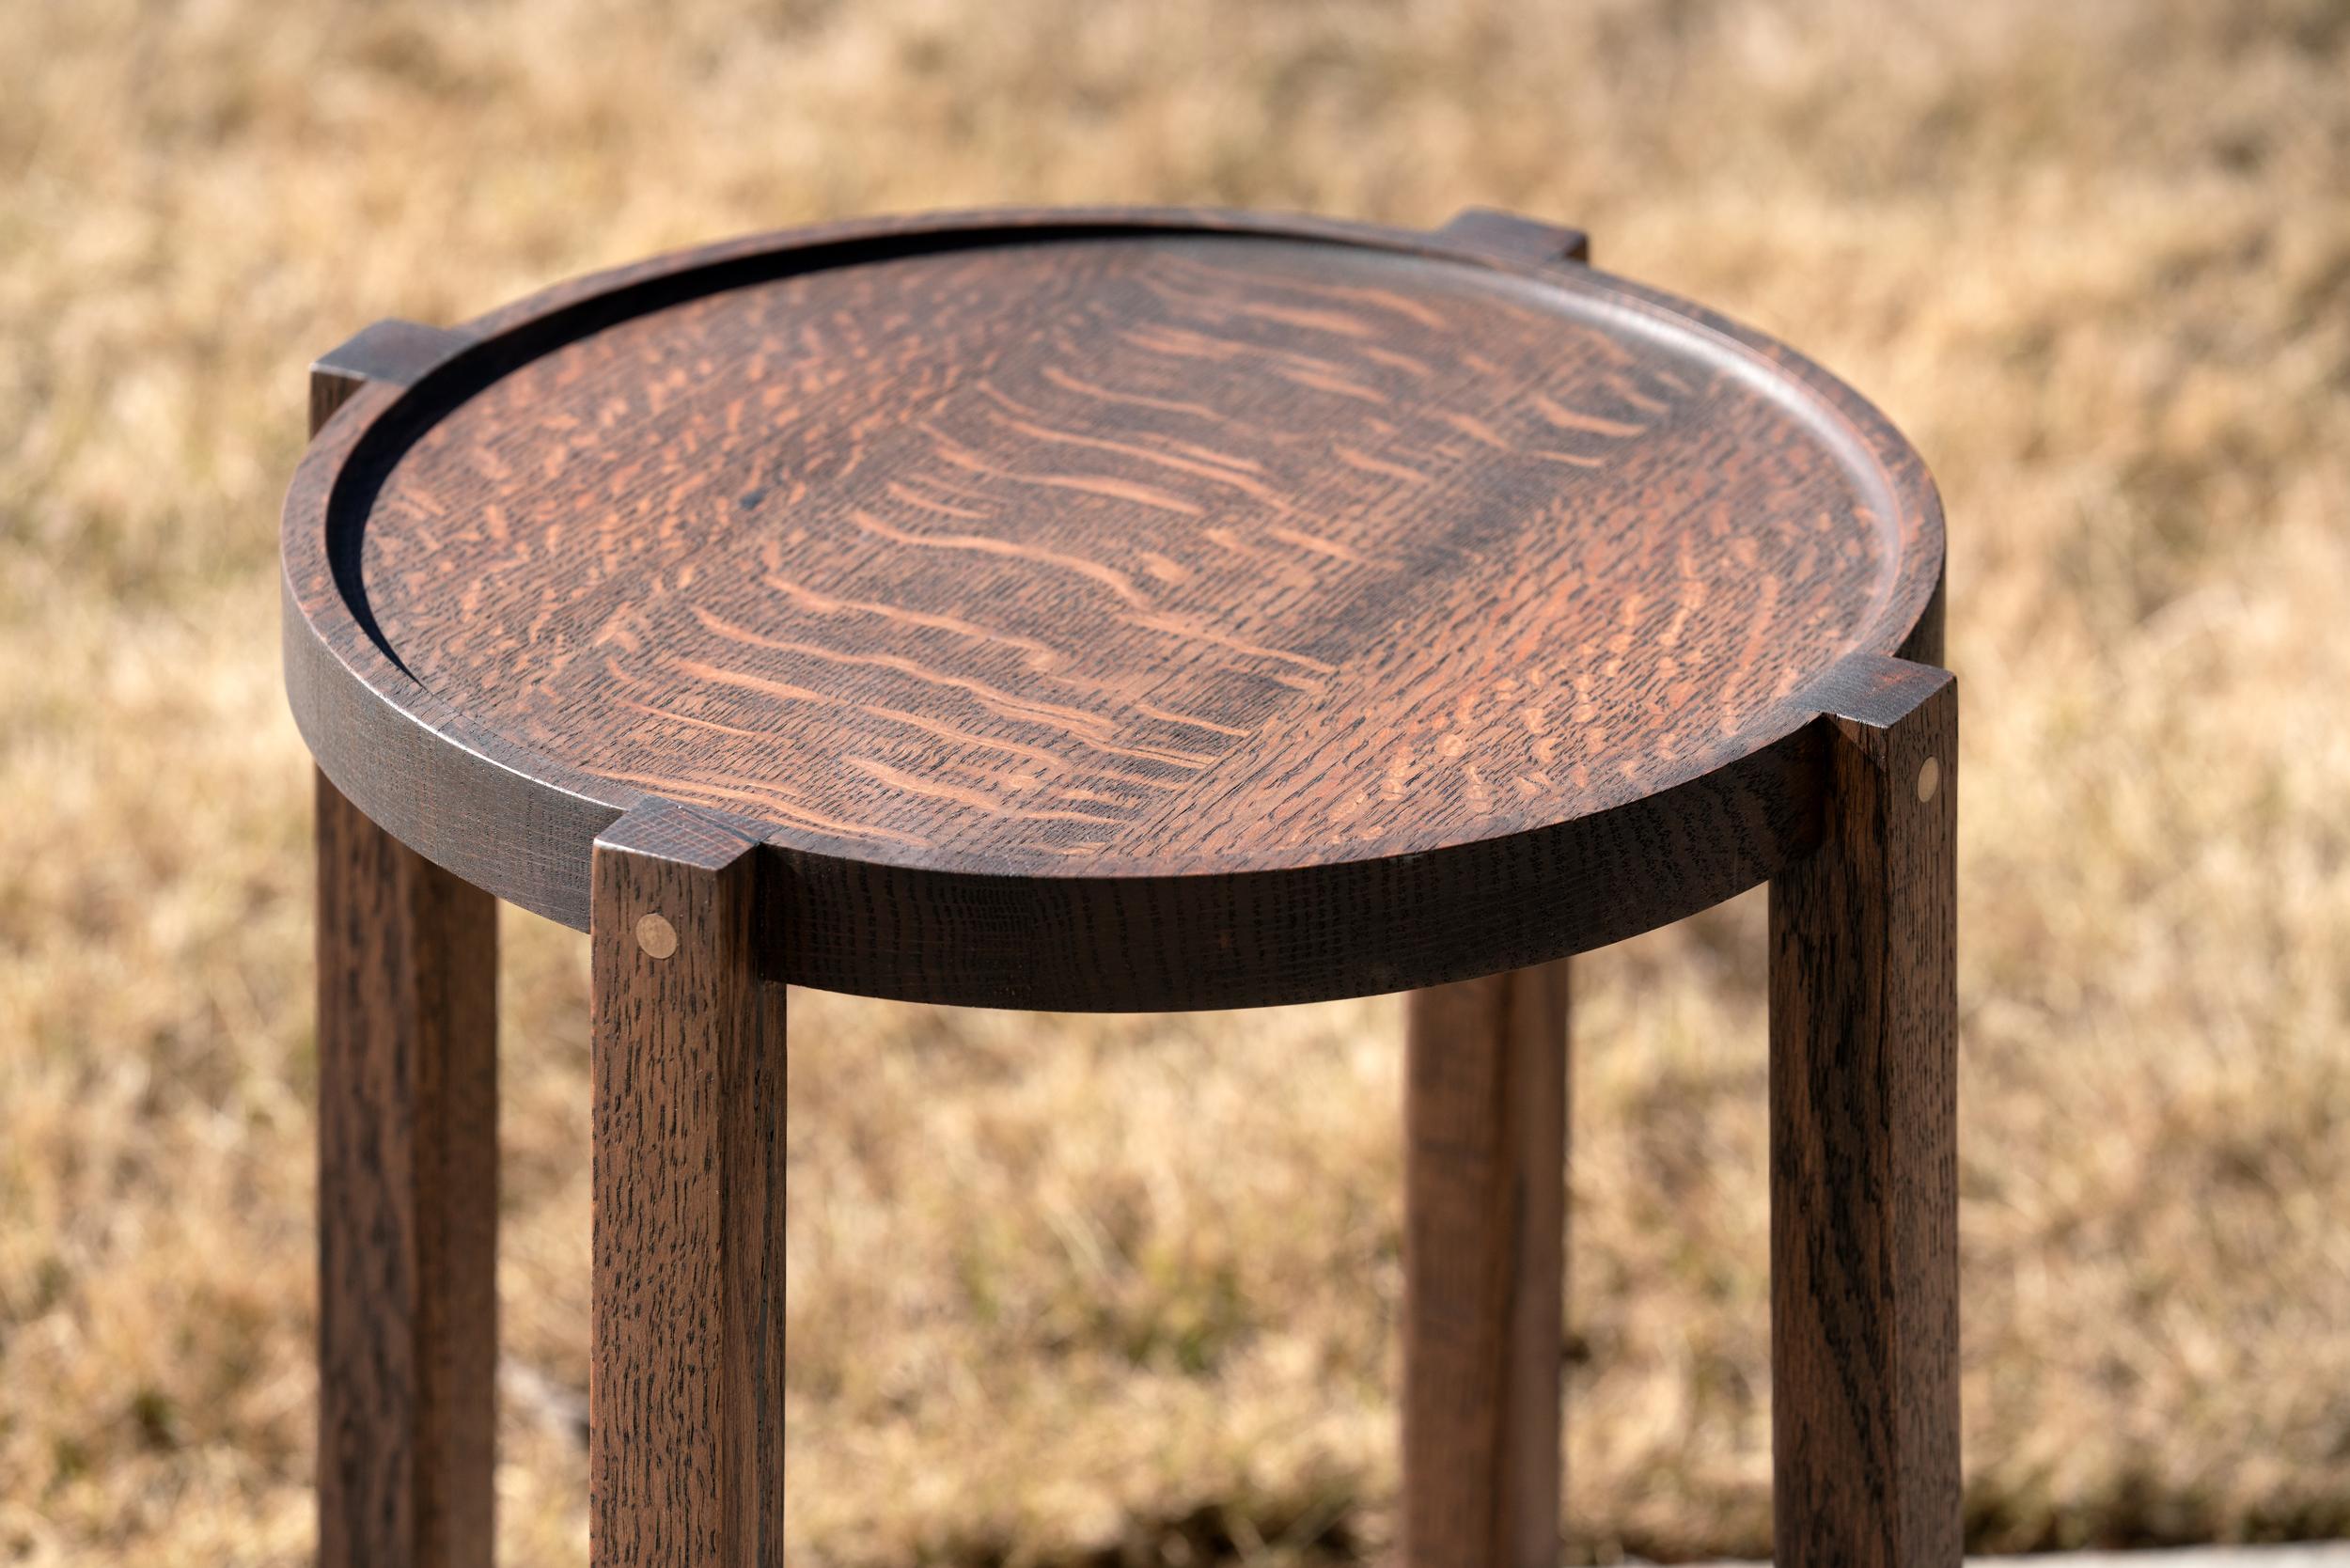 Wir nennen diesen runden Beistelltisch aus schwarzer Eiche mit bronzefarbenen Details den Waverly-Tisch. Dieser Tisch ist aus feinstem, wiederverwendetem Stadtholz gefertigt und so vielseitig einsetzbar. Der Waverly ist stabil und dennoch leicht und